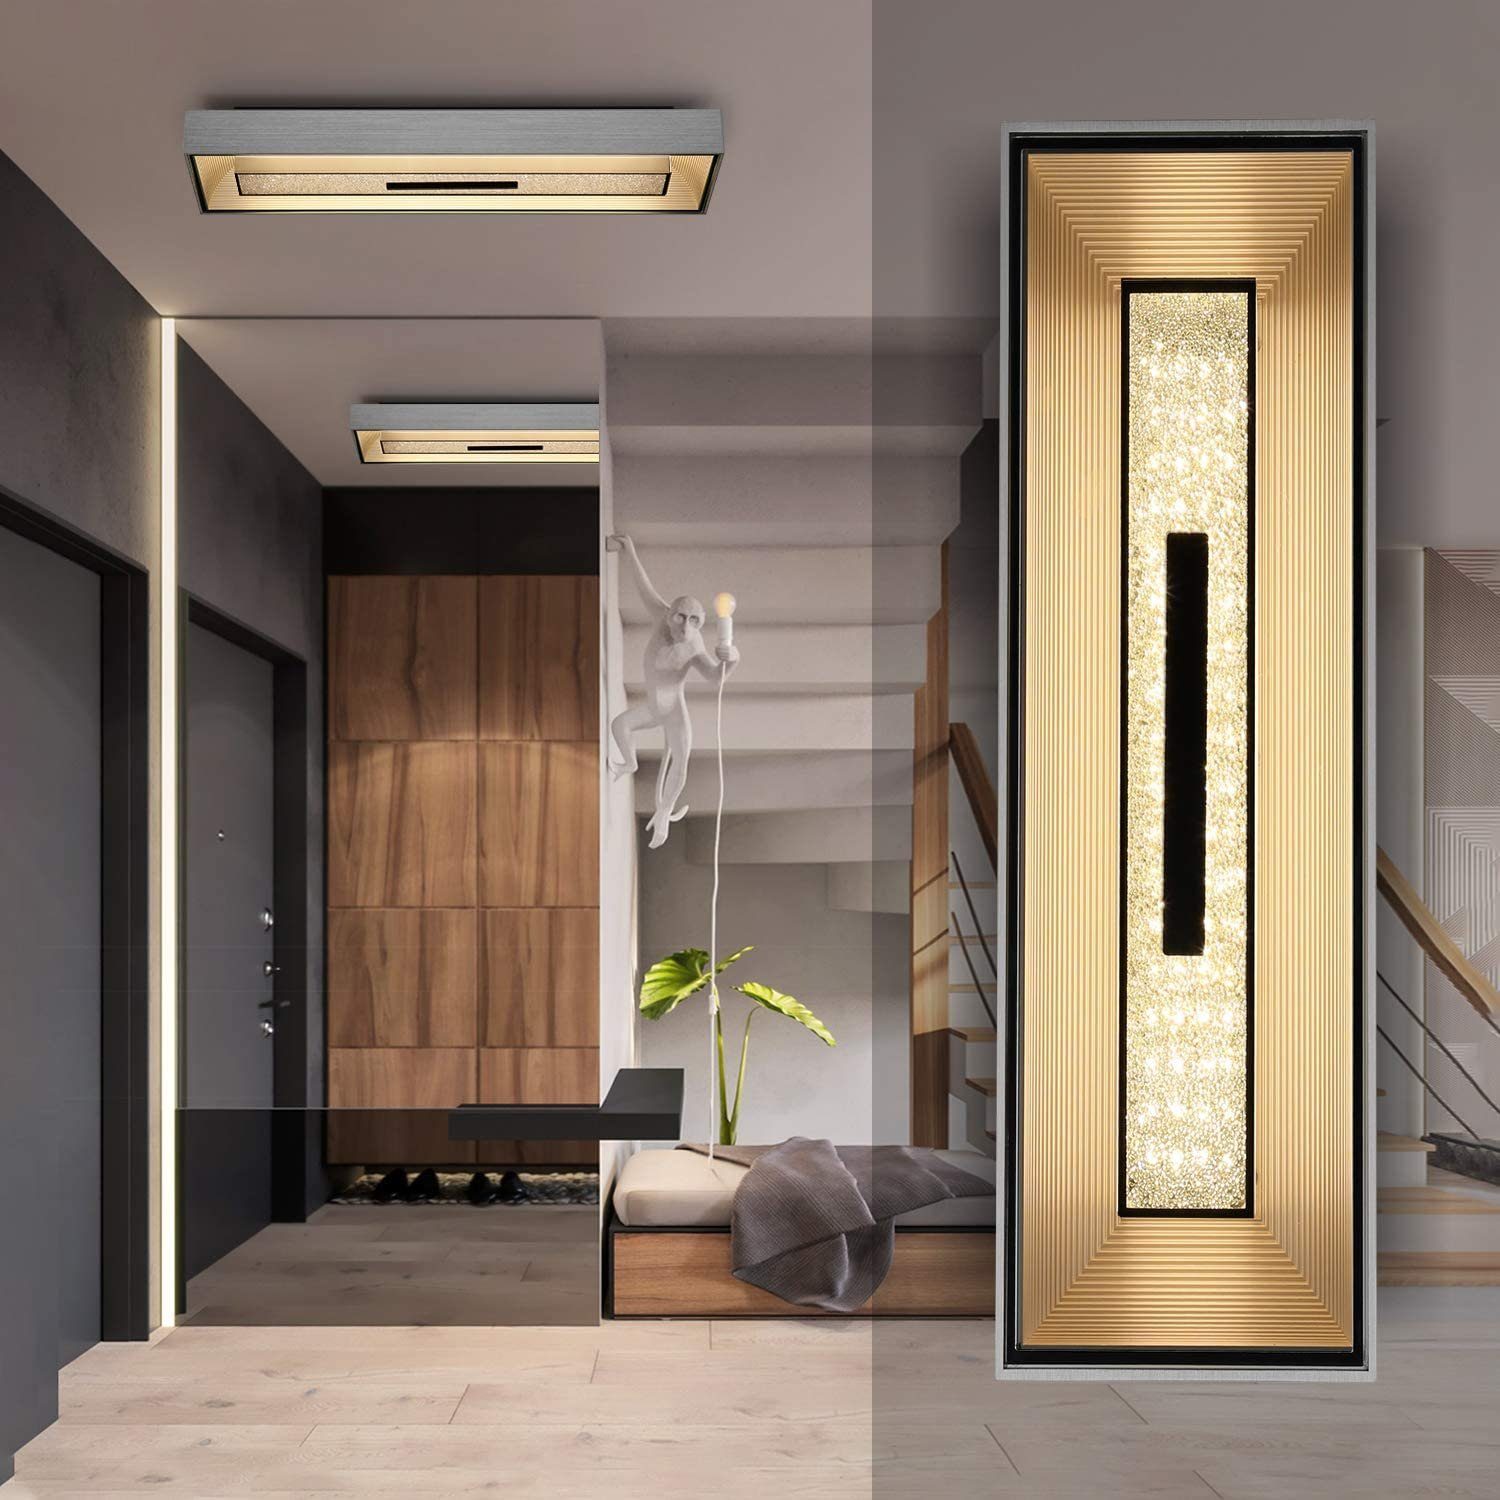 LED Luxus Chrom Decken Lampe Flur Leuchte Ess Zimmer Glas Kugel Spot Beleuchtung 